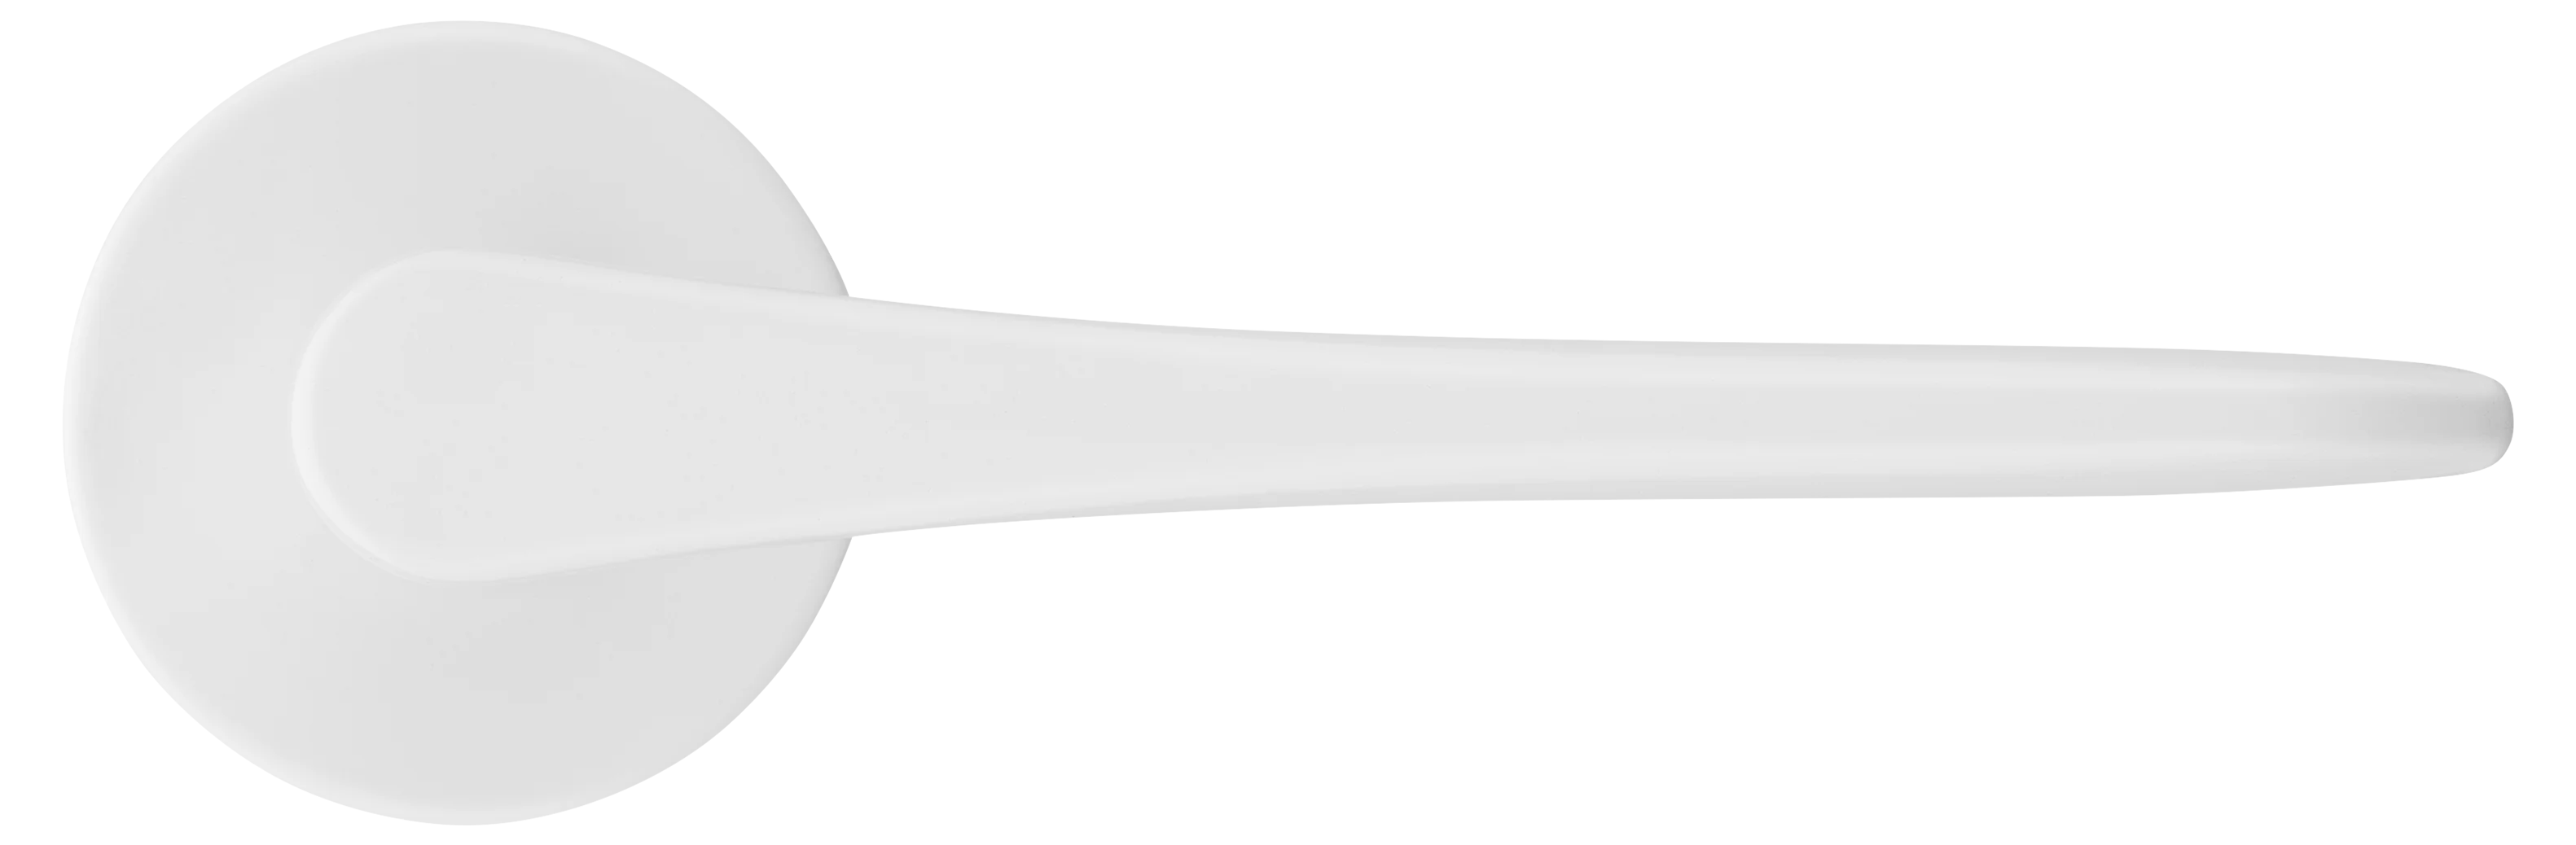 AULA R5 BIA, ручка дверная на розетке 7мм, цвет -  белый фото купить в Пензе